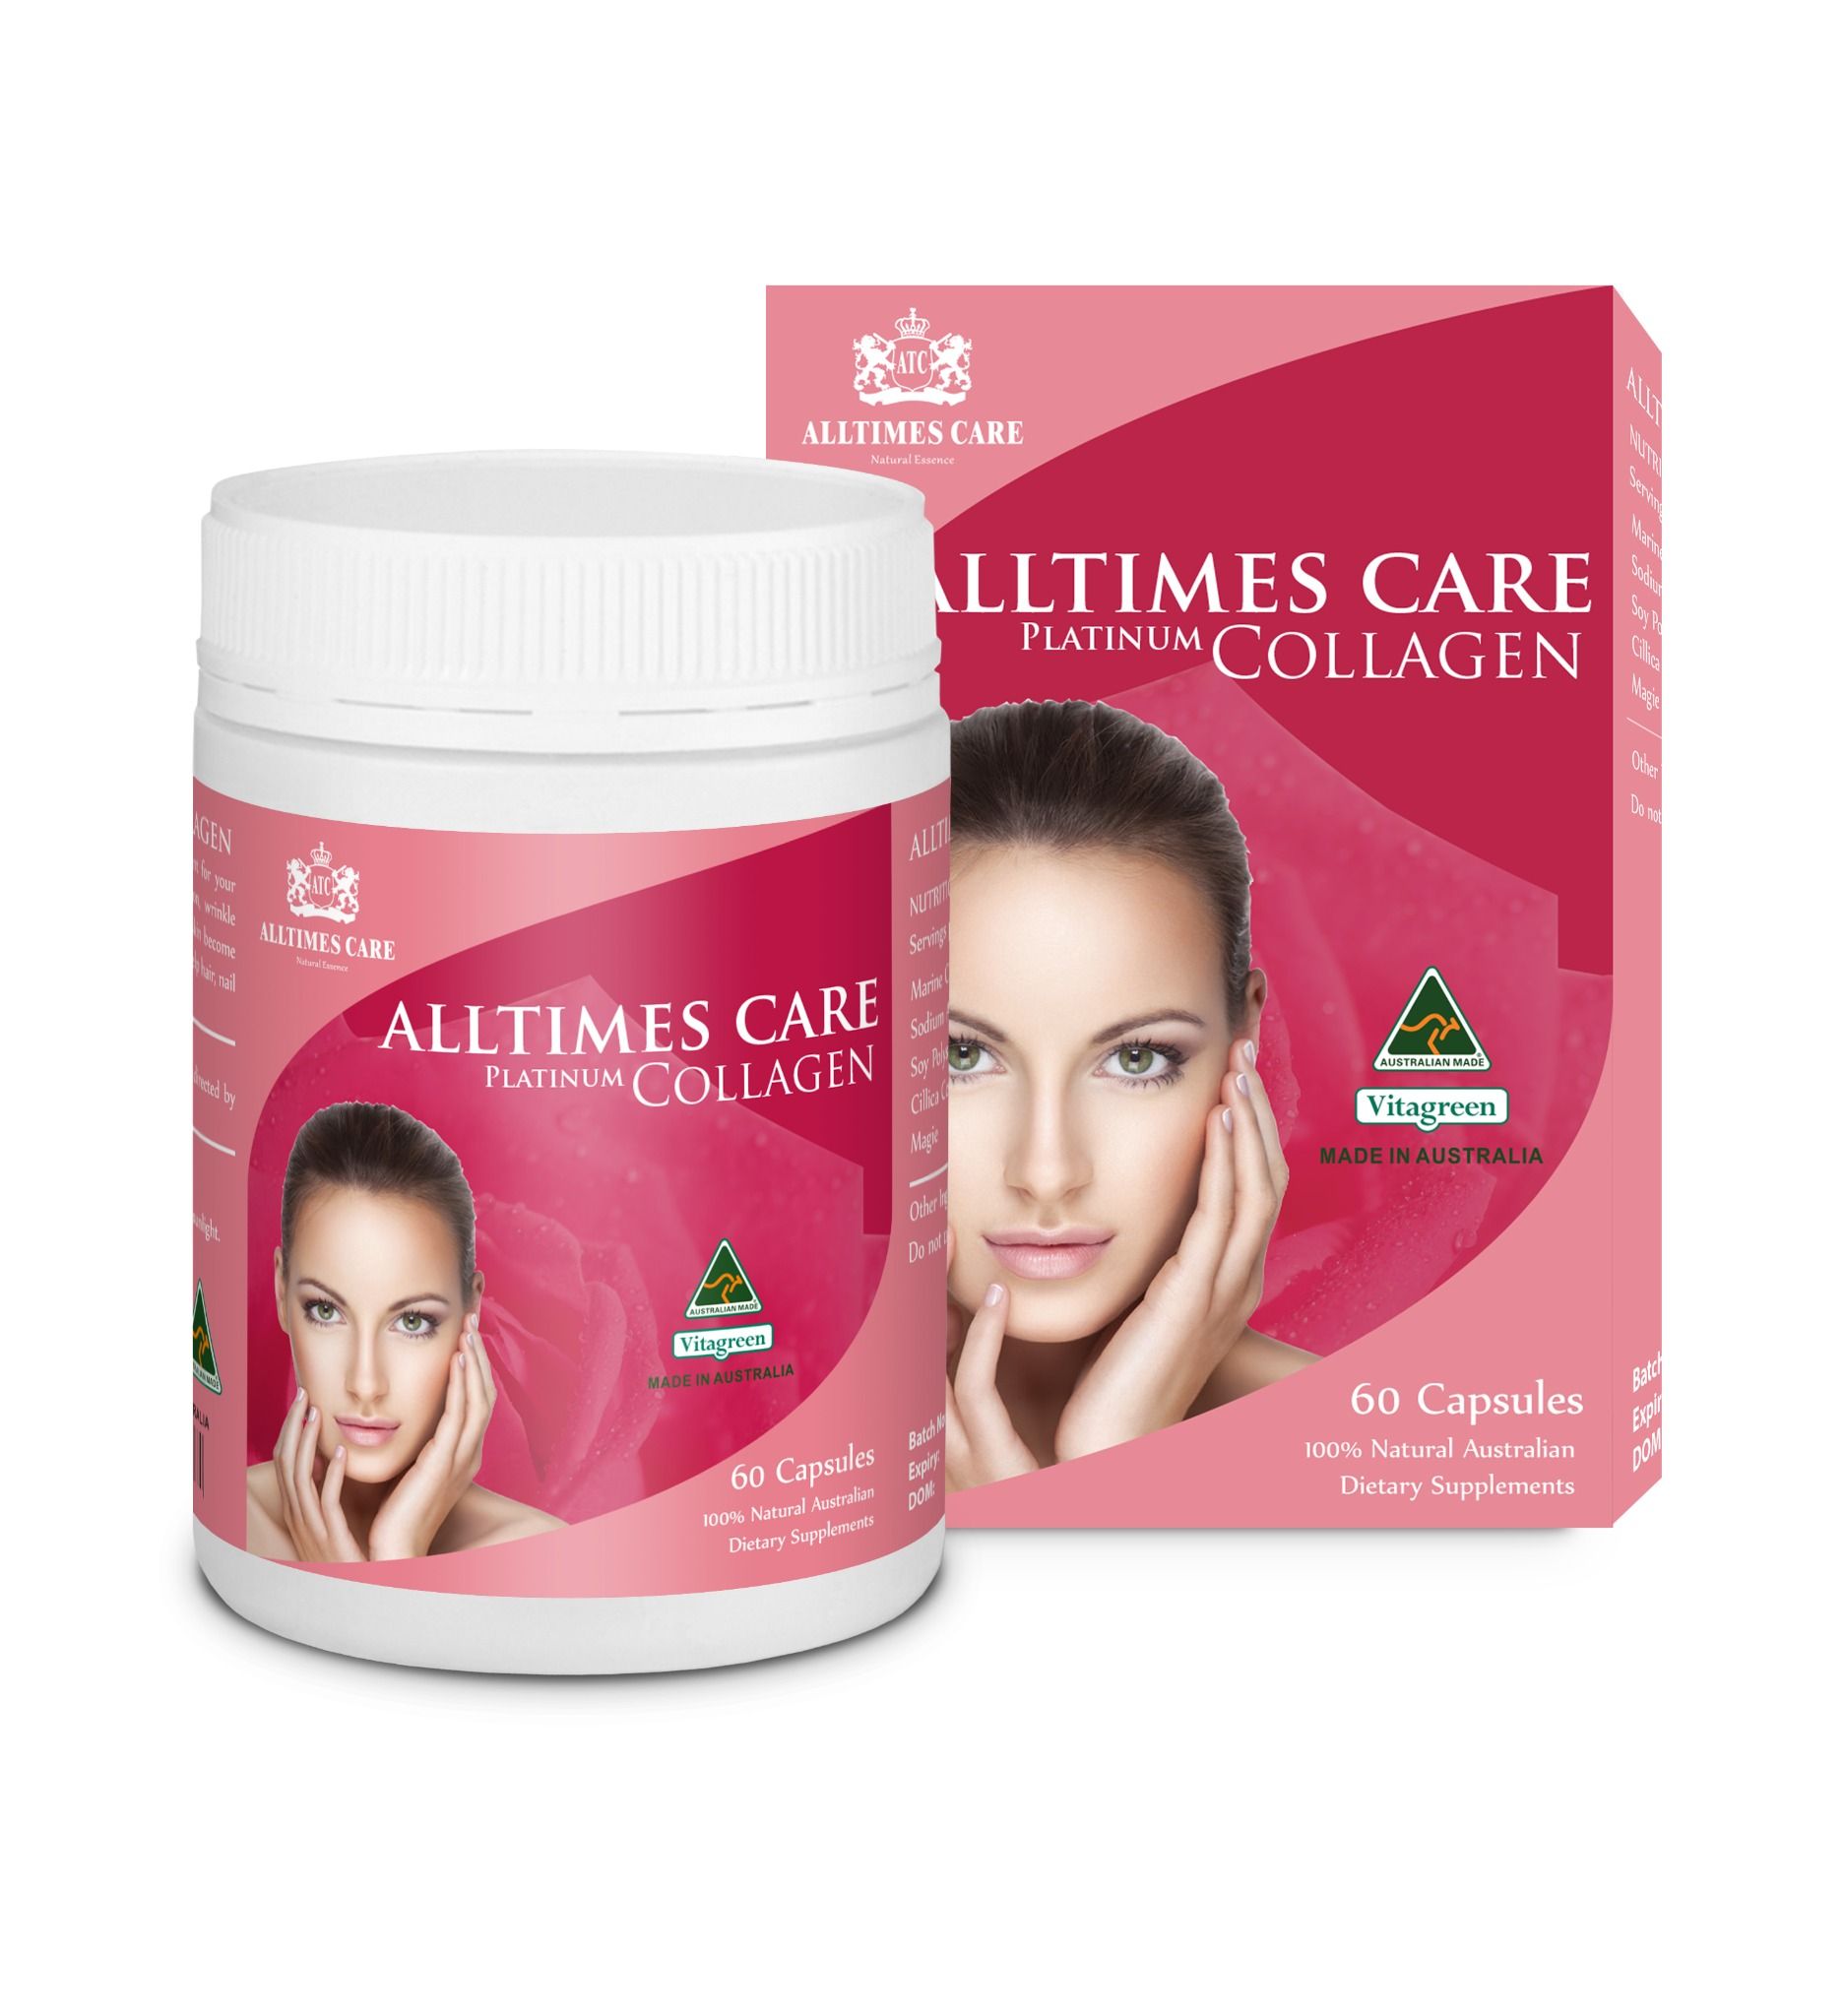  Alltimes Care Platinum Collagen - Thực phẩm bảo vệ sức khỏe chống lão hóa, giúp đẹp da 